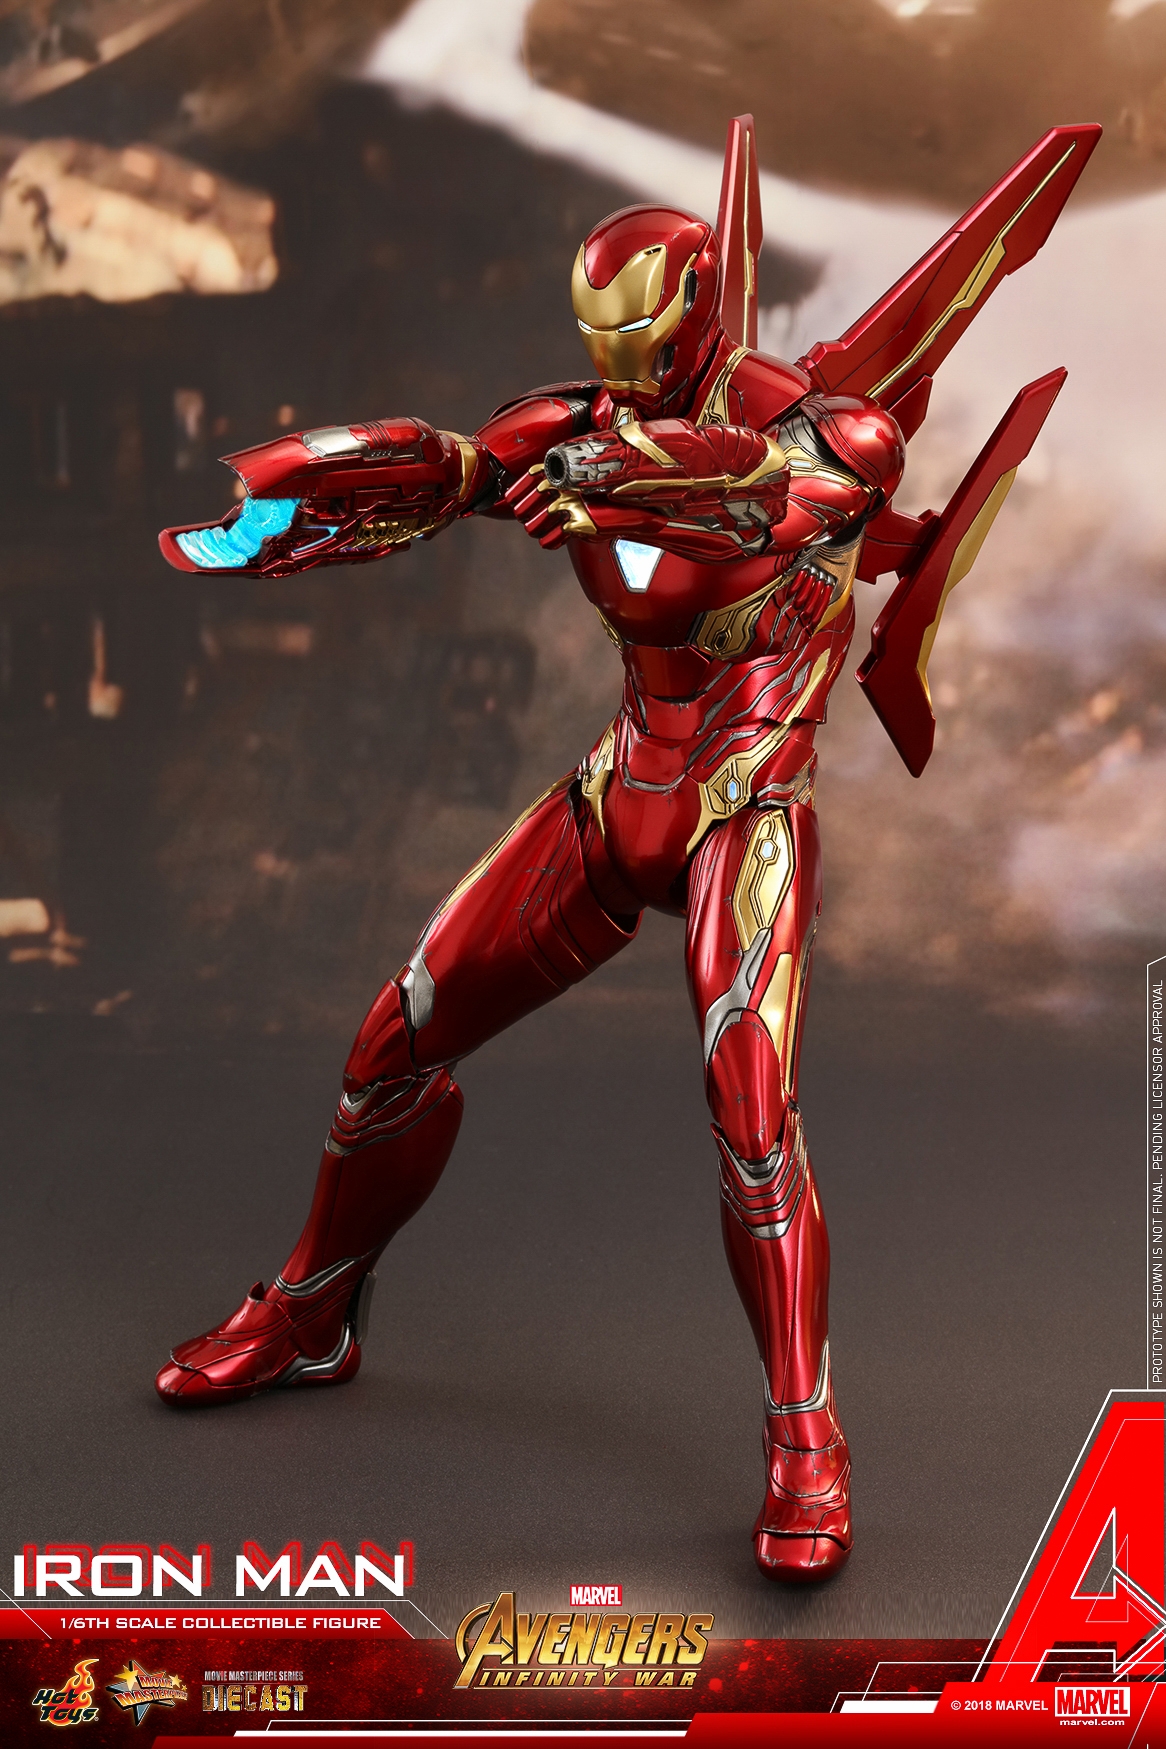 Hot-Toys-MMS473D23-Avengers-Infinity-War-Iron-Man-Collectible-Figure-007.jpg